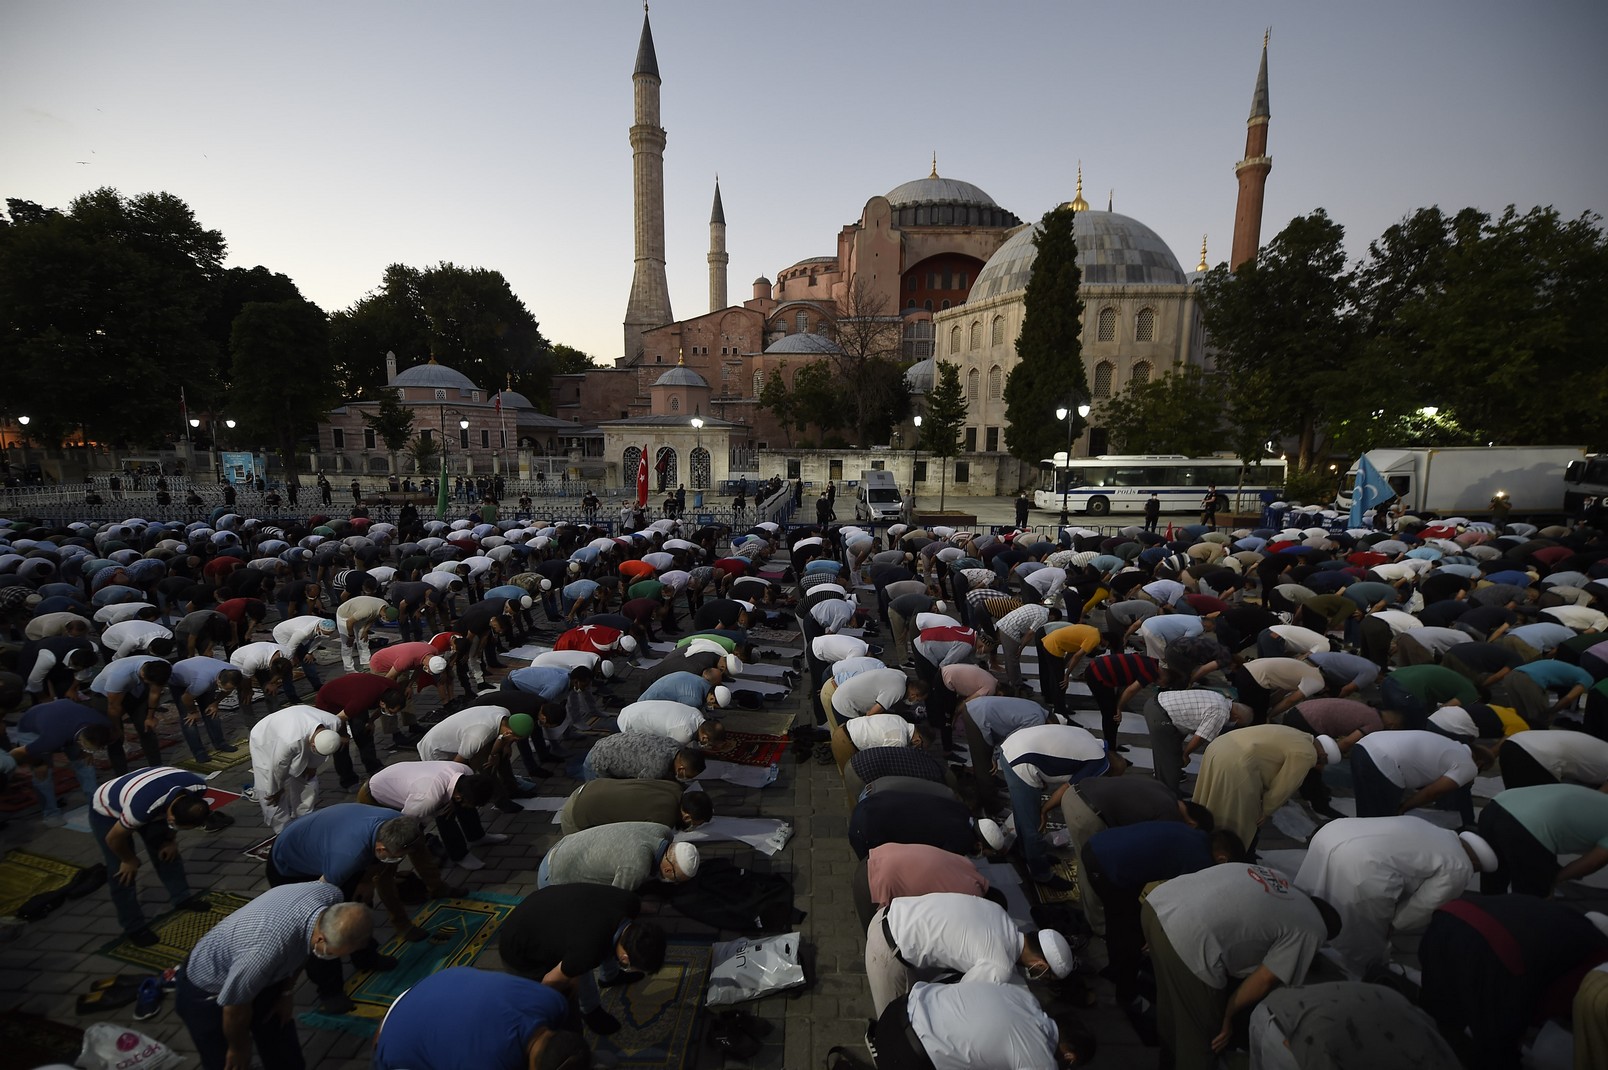 μονή της χώρας: ο ερντογάν μετατρέπει σε τζαμί ακόμη ένα βυζαντινό ναό